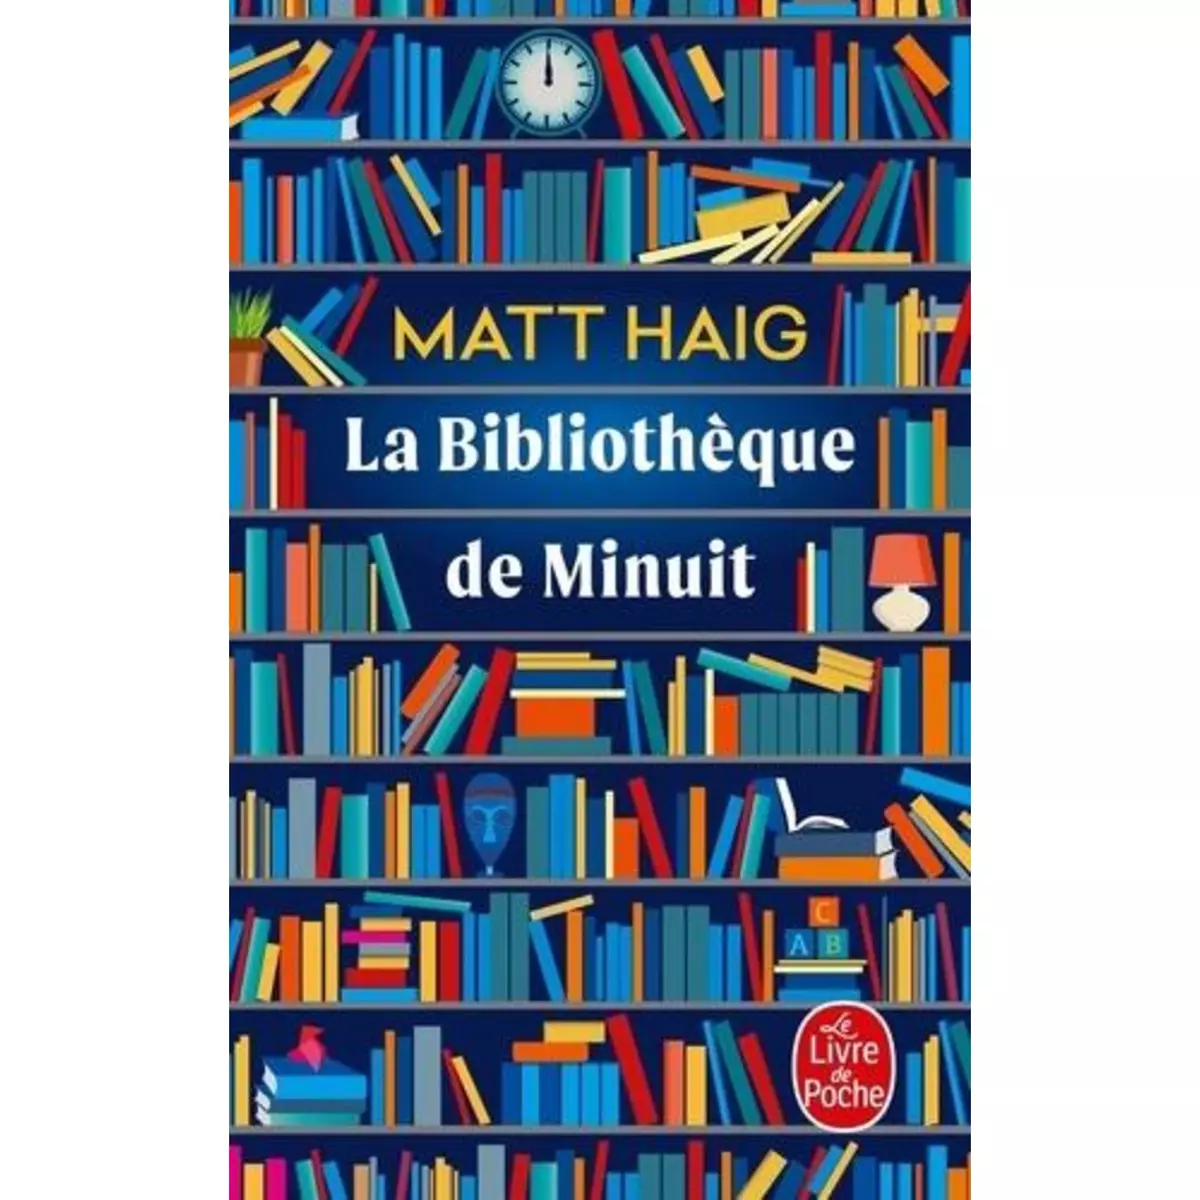  LA BIBLIOTHEQUE DE MINUIT, Haig Matt